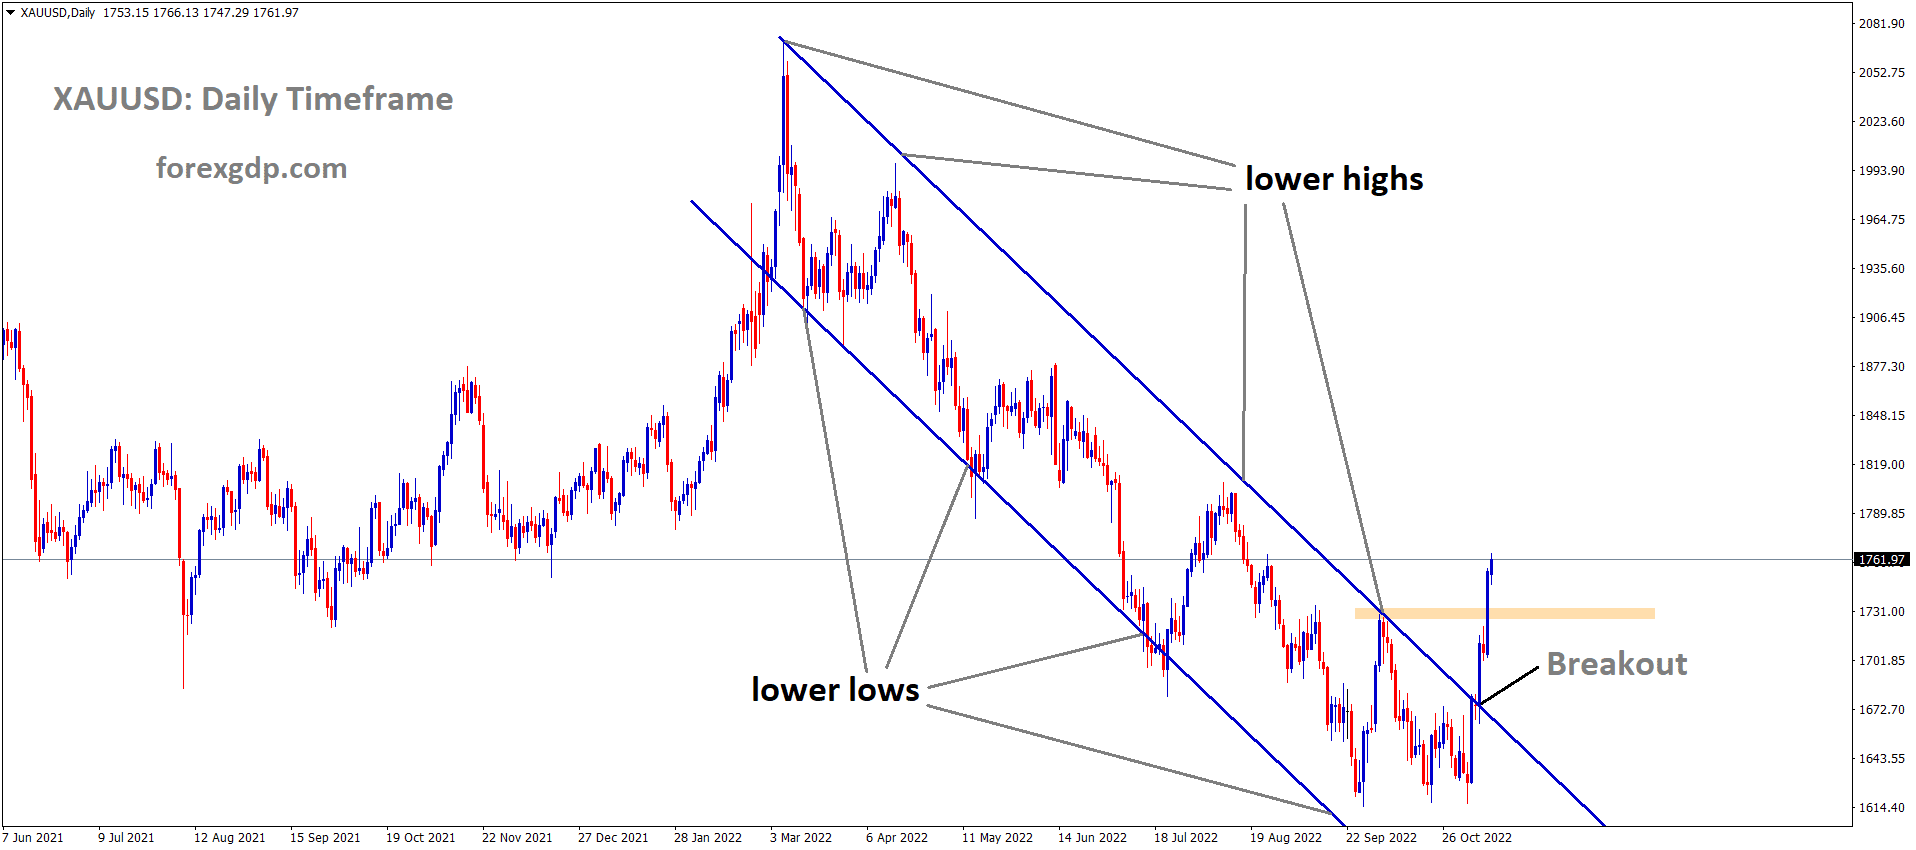 XAUUSD Gold Price has broken the Descending channel in Upside.